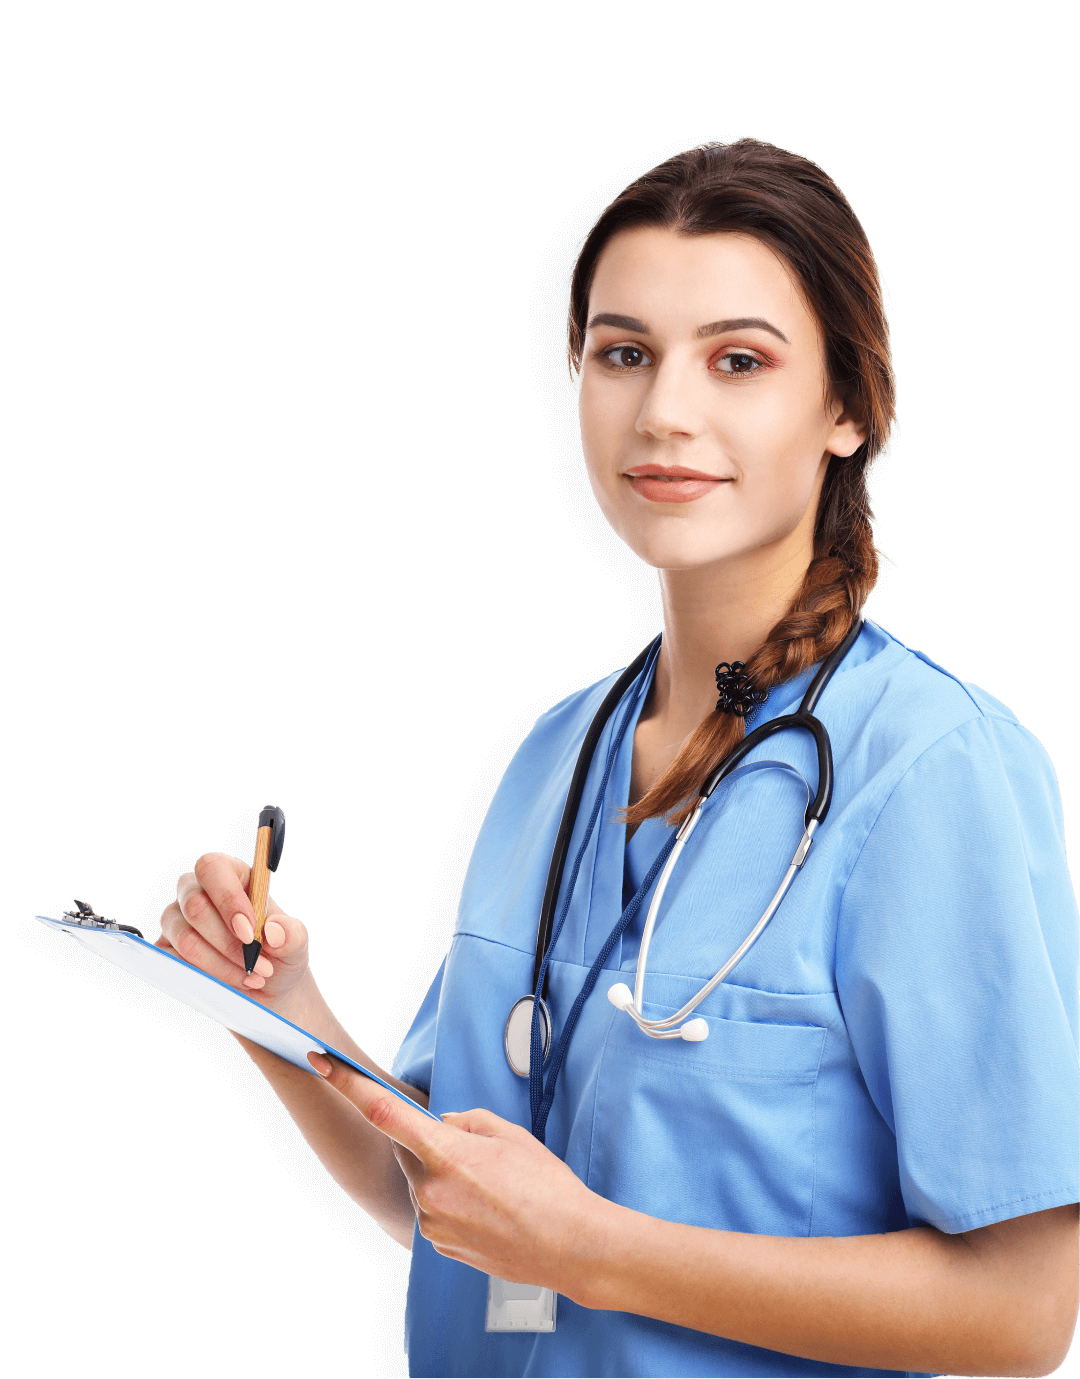 Nurse-Cardiac Medicine Certification (CMC) Adult professional